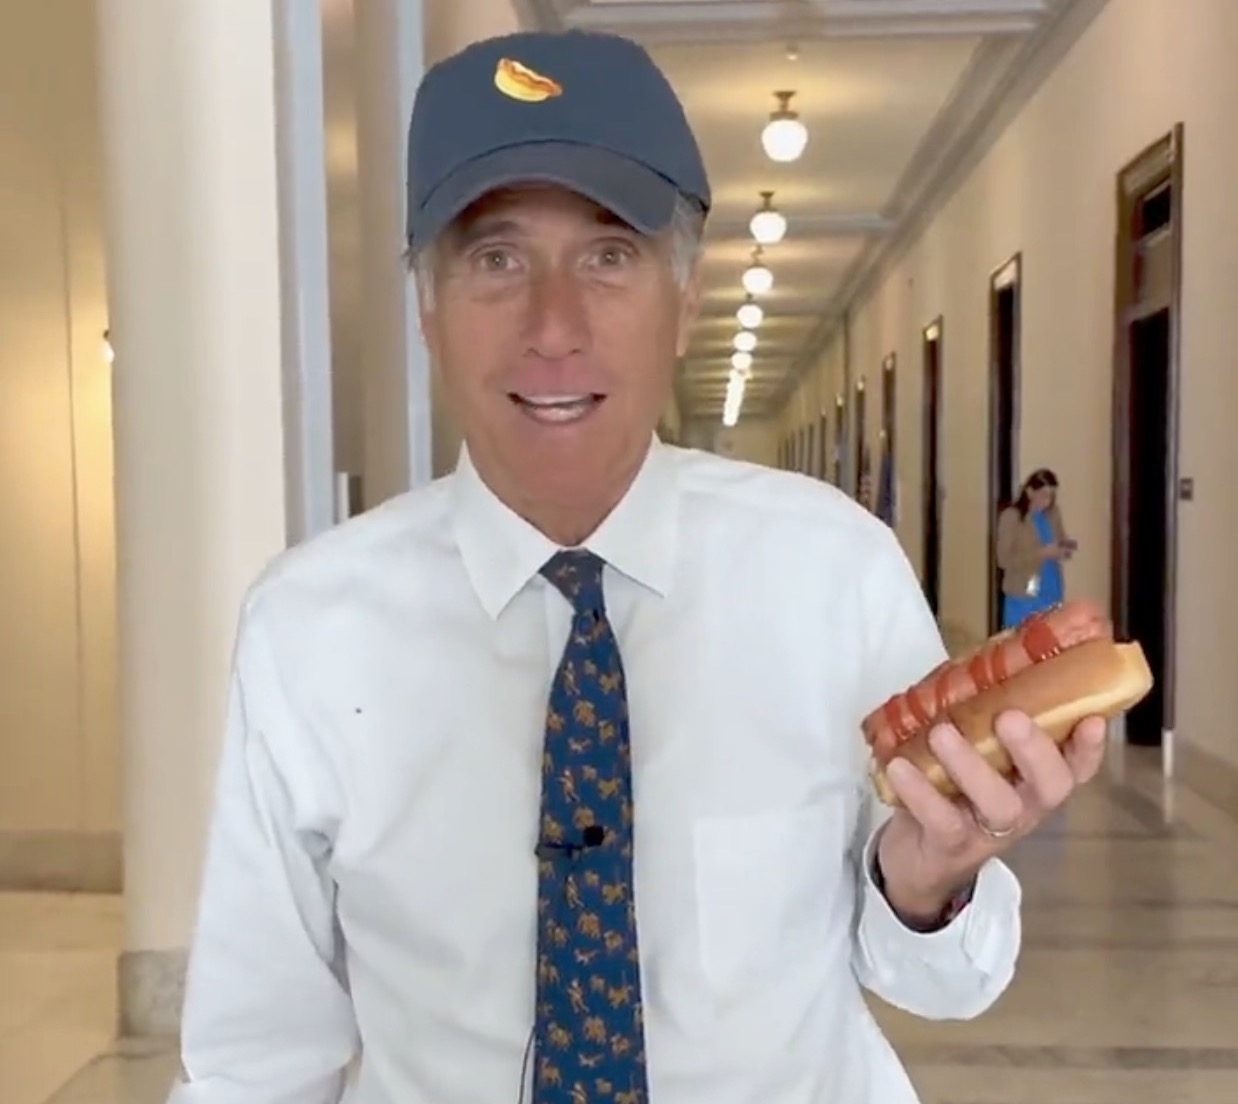 Mitt Romneys National Hot Dog Day Video Is So Weird